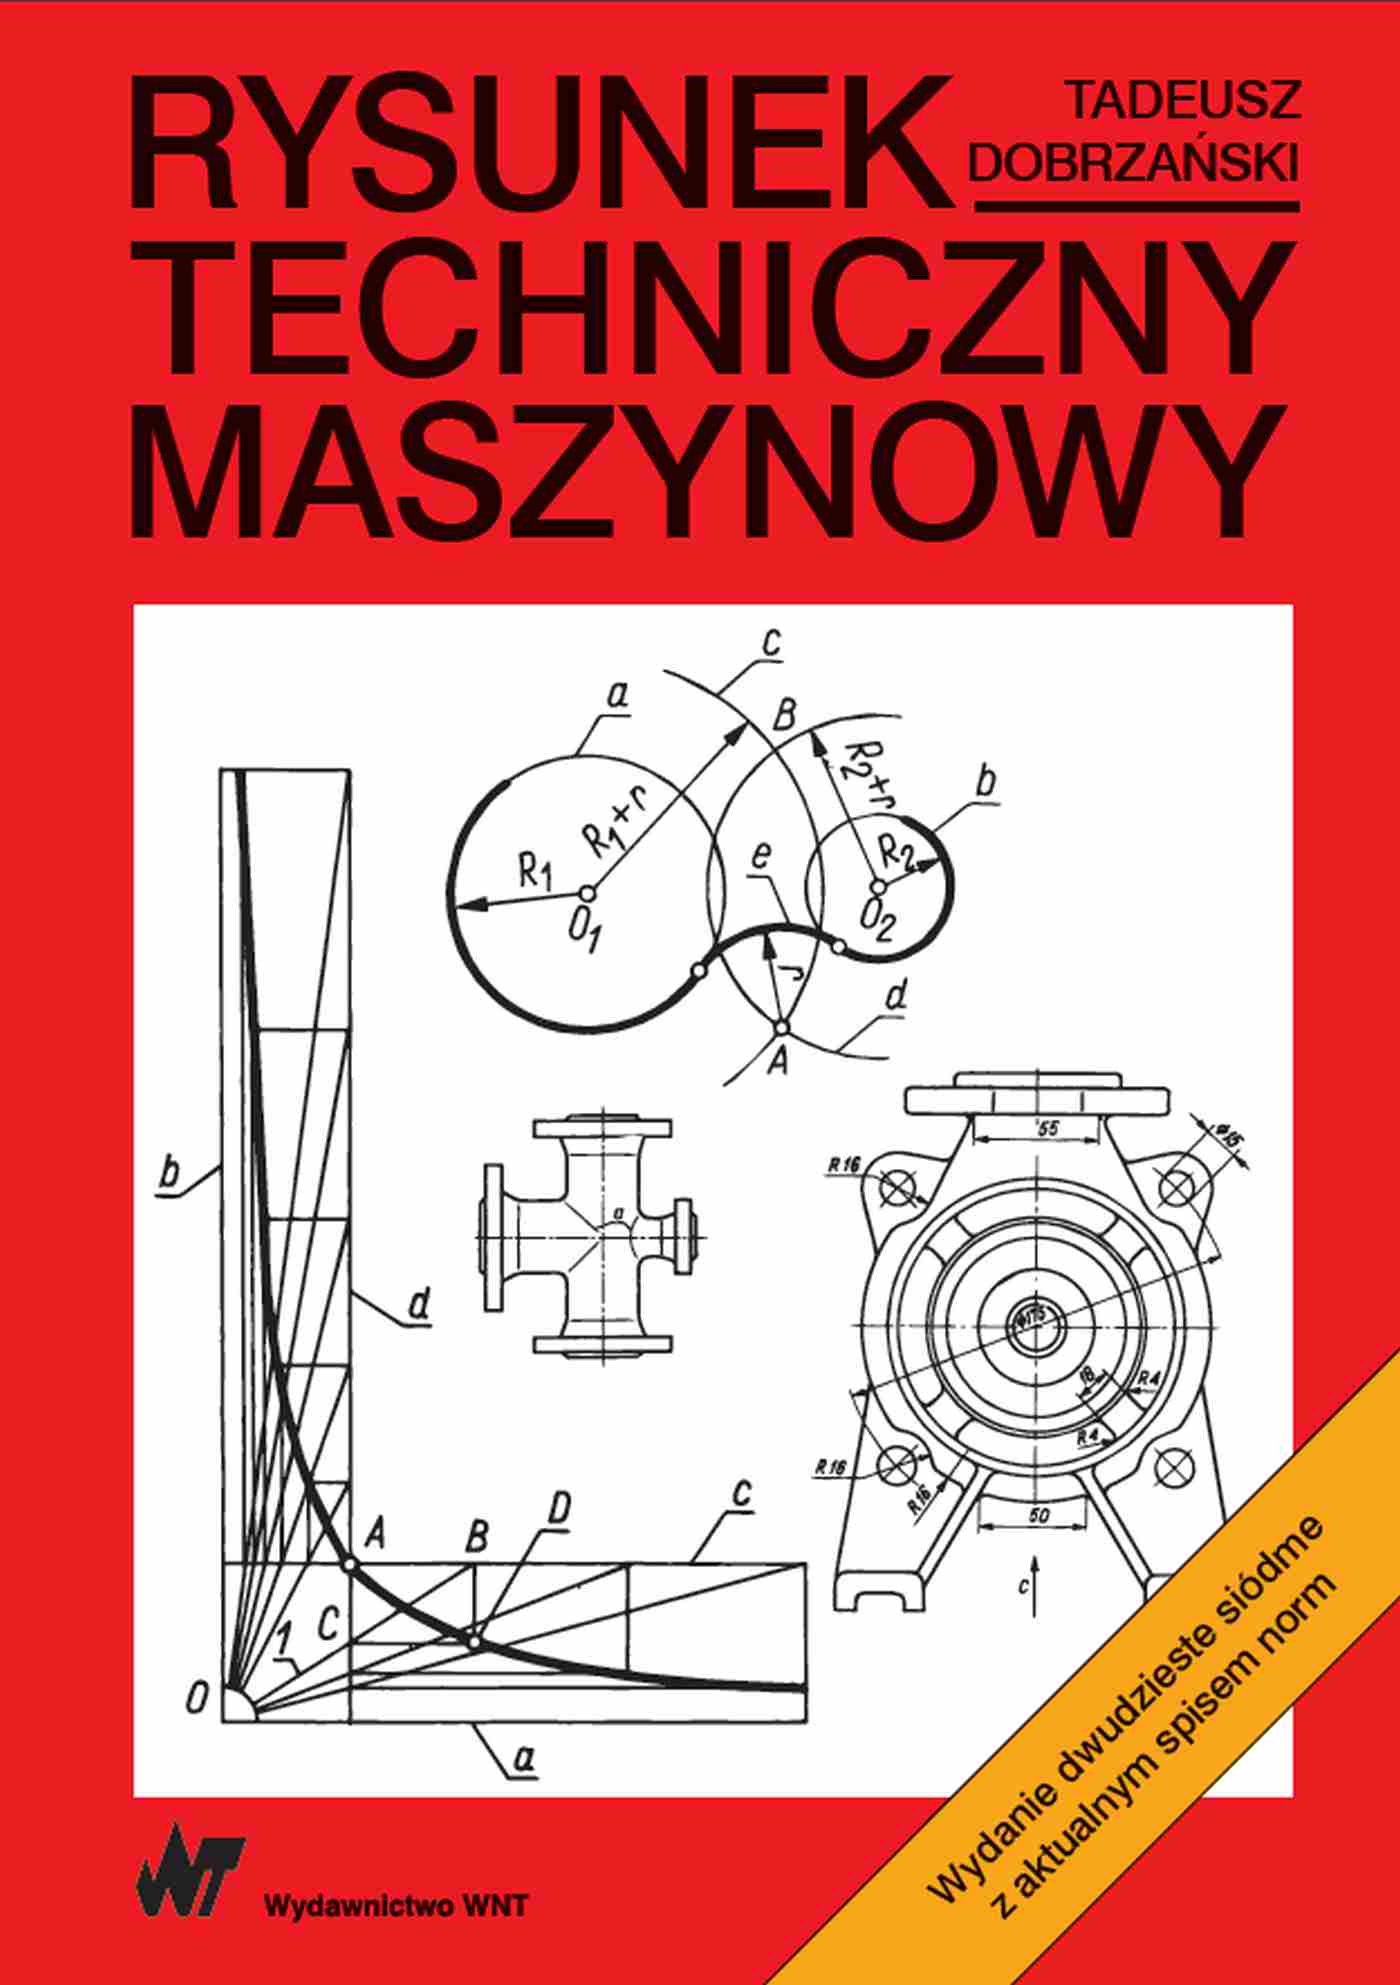 Carte Rysunek techniczny maszynowy Tadeusz Dobrzański